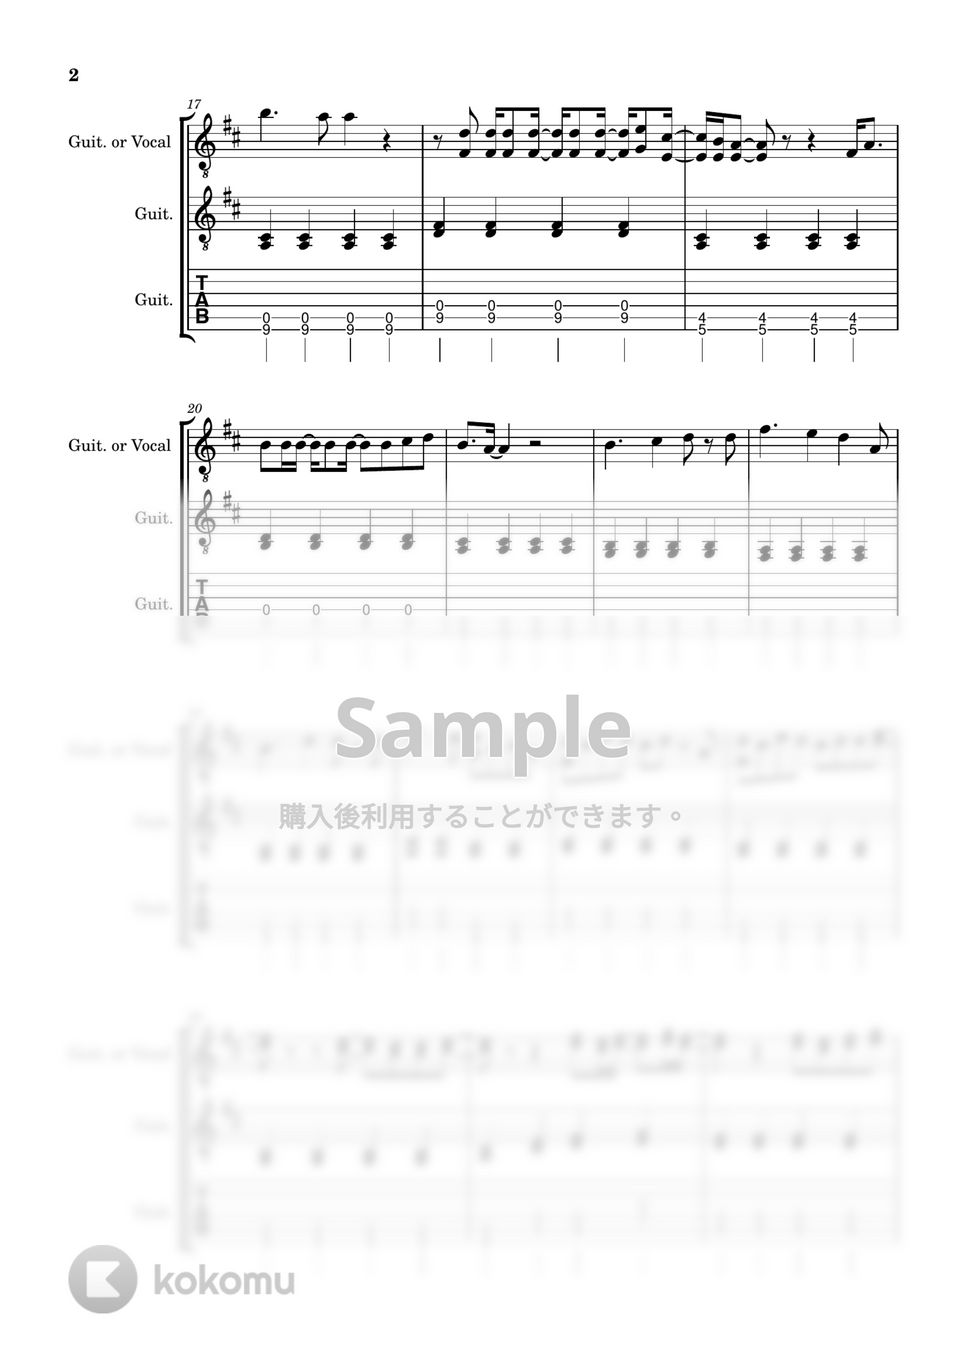 あいみょん - マリーゴールド (ギター / J-POP) by 川西三裕